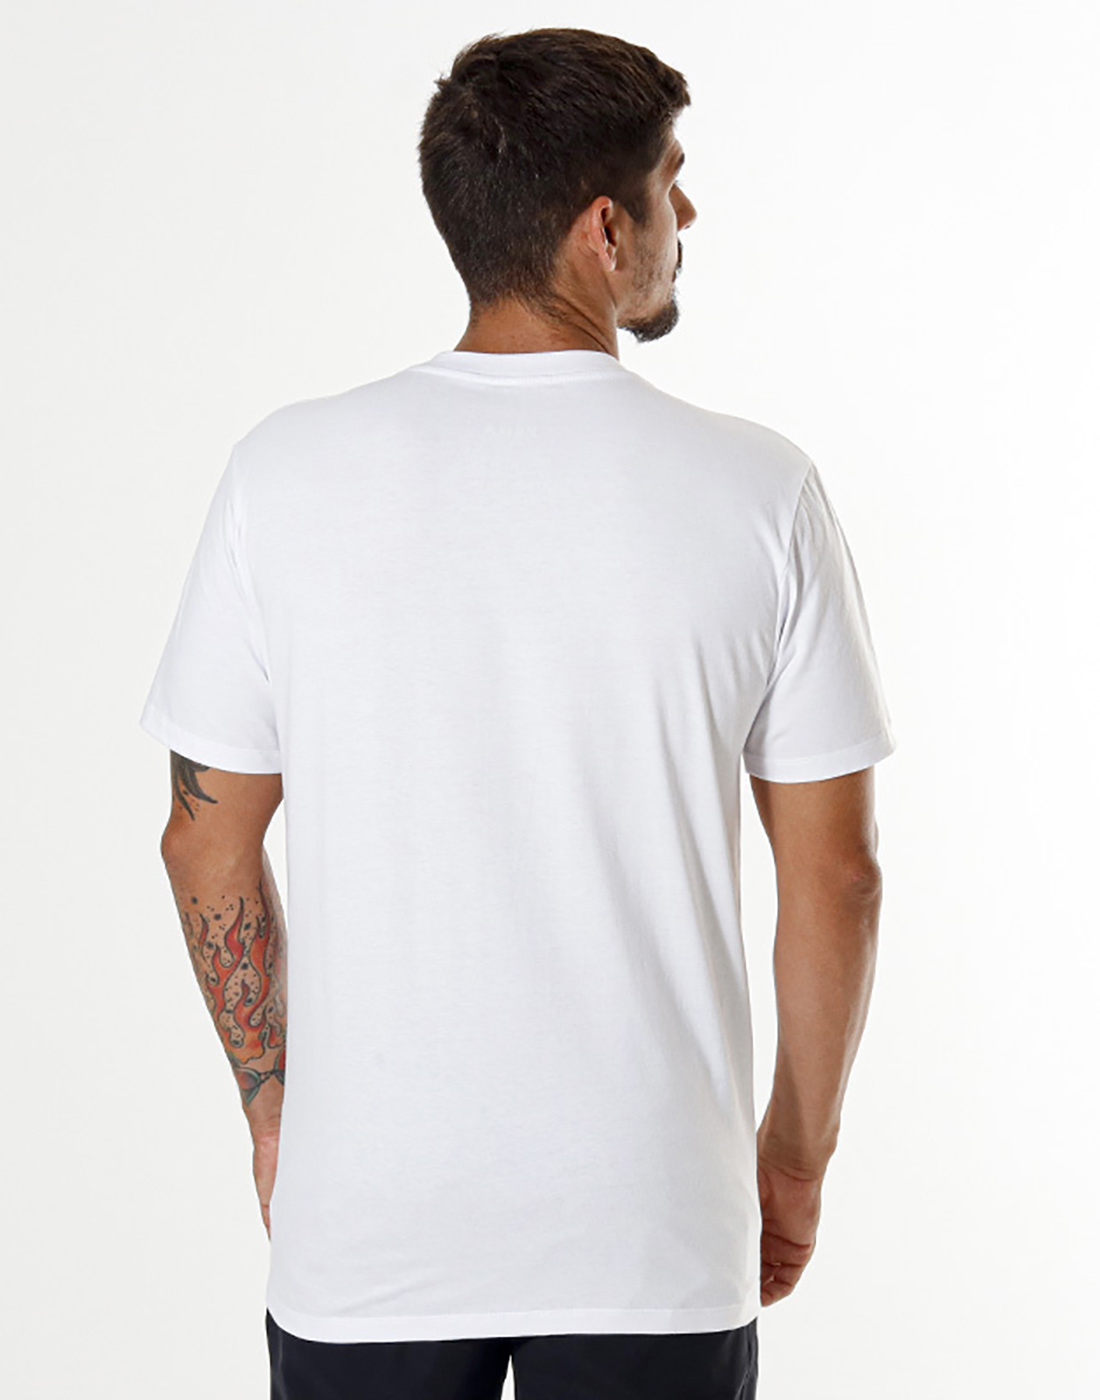 Camiseta Estampada Landscape Branca Pena